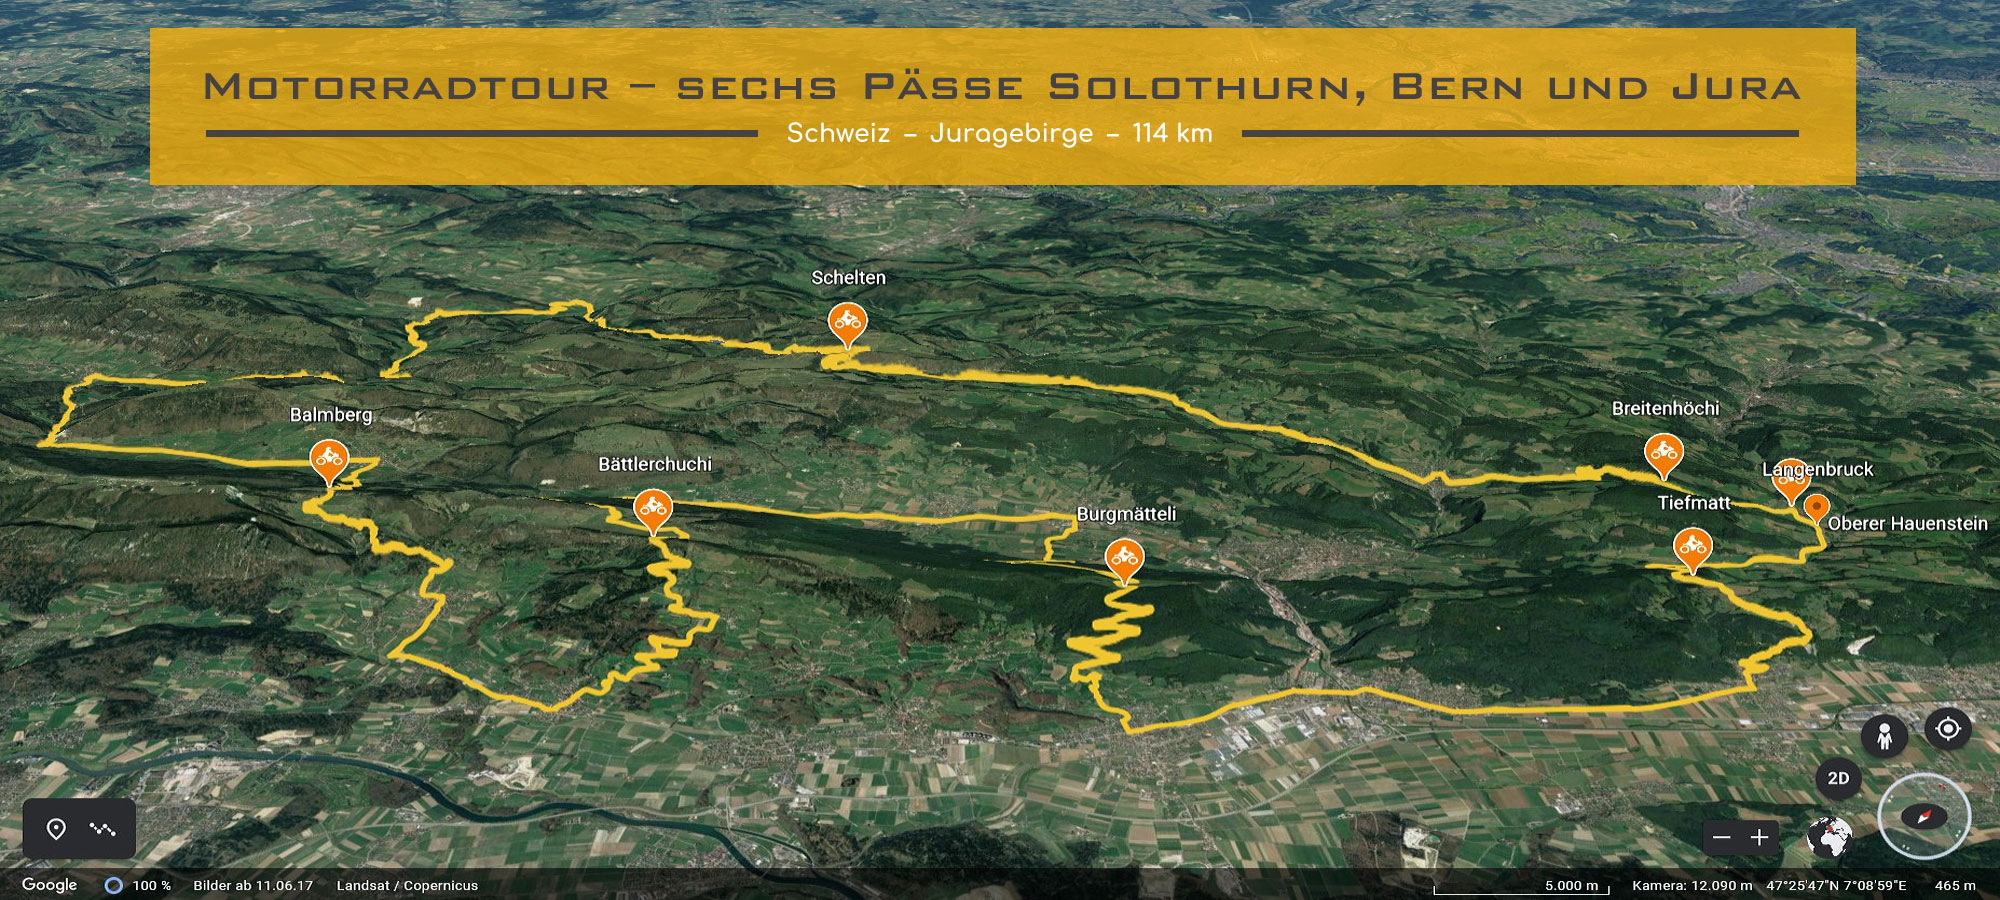 Motorradtour – sechs Paesse Solothurn, Bern und Jura